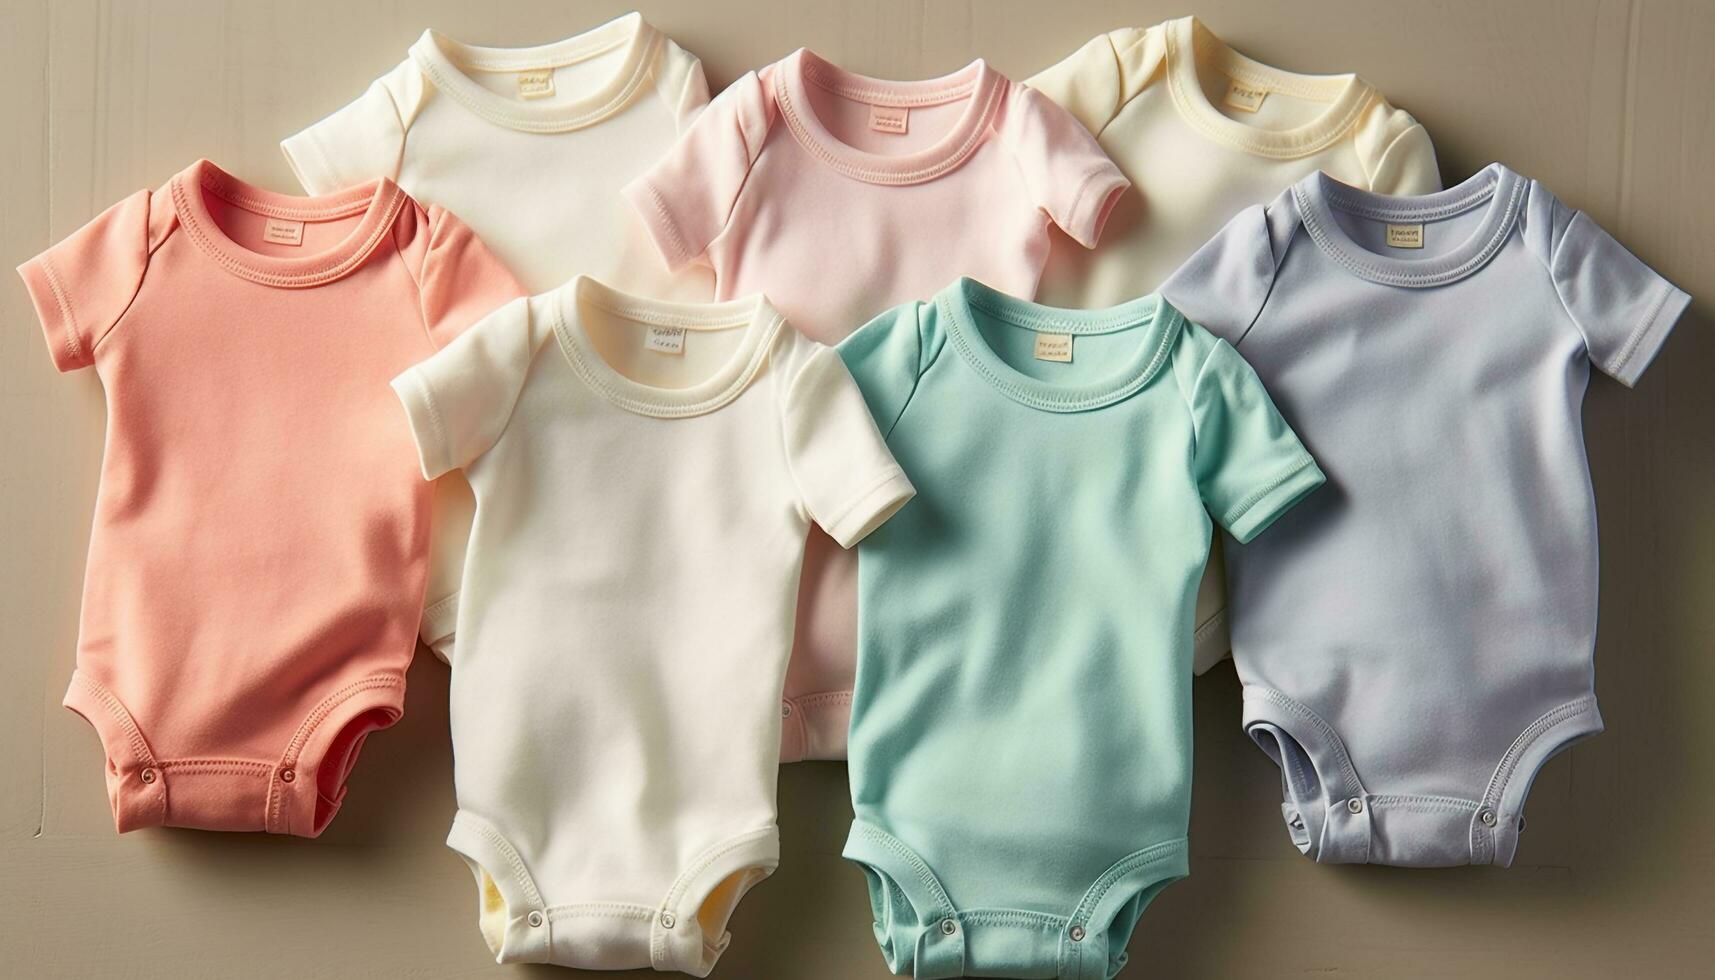 süß Baby Kleidung Sammlung Blau, Rosa, gestreift, multi farbig, klein Kleider generiert durch ai foto